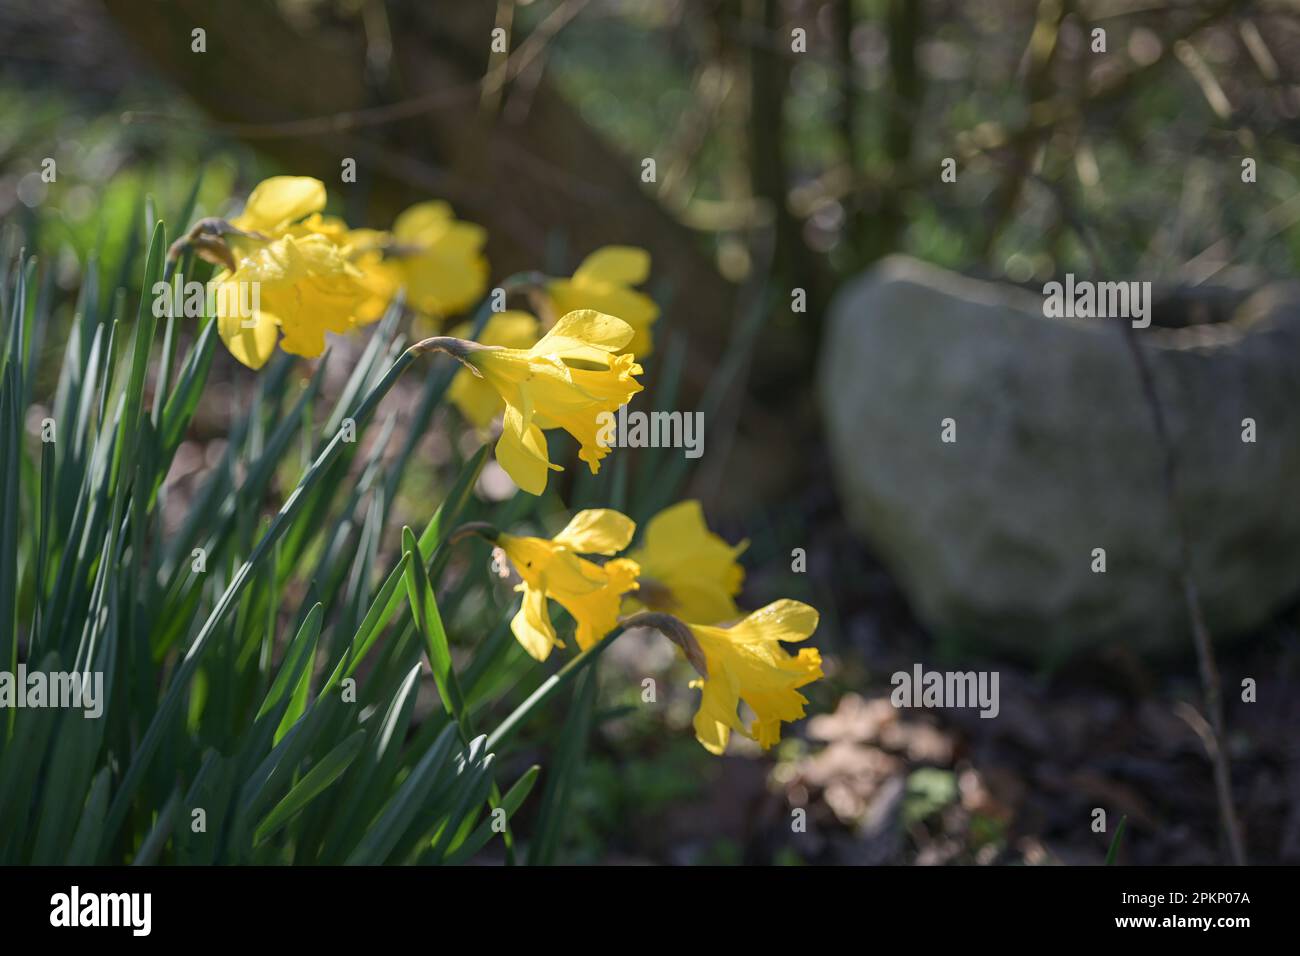 Narciso (narciso) gialle che fioriscono in un giardino in primavera, spazio copia, fuoco selezionato, profondità di campo ristretta Foto Stock